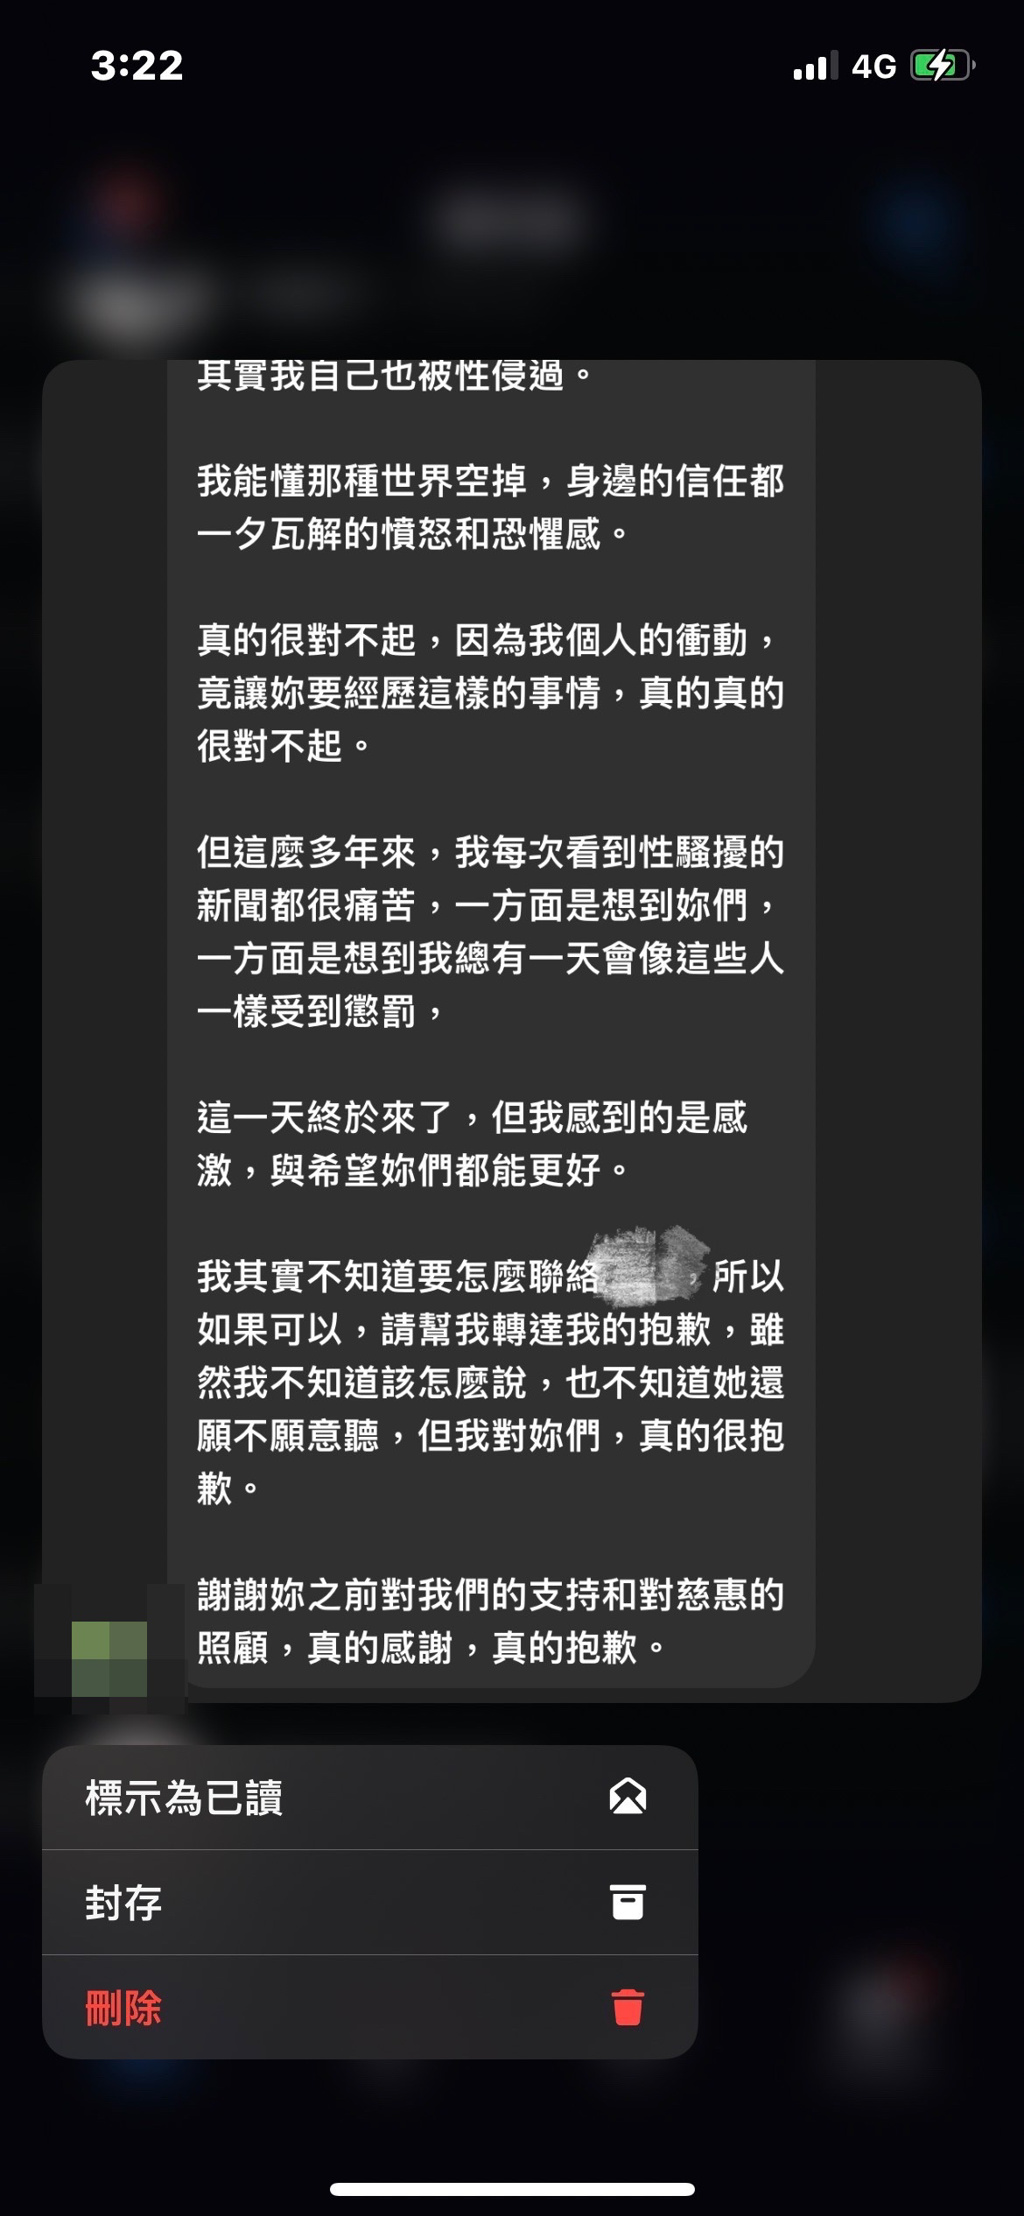 宥勝向揭露他性騷擾的網友發私訊再道歉，並稱自己曾被性騷擾。